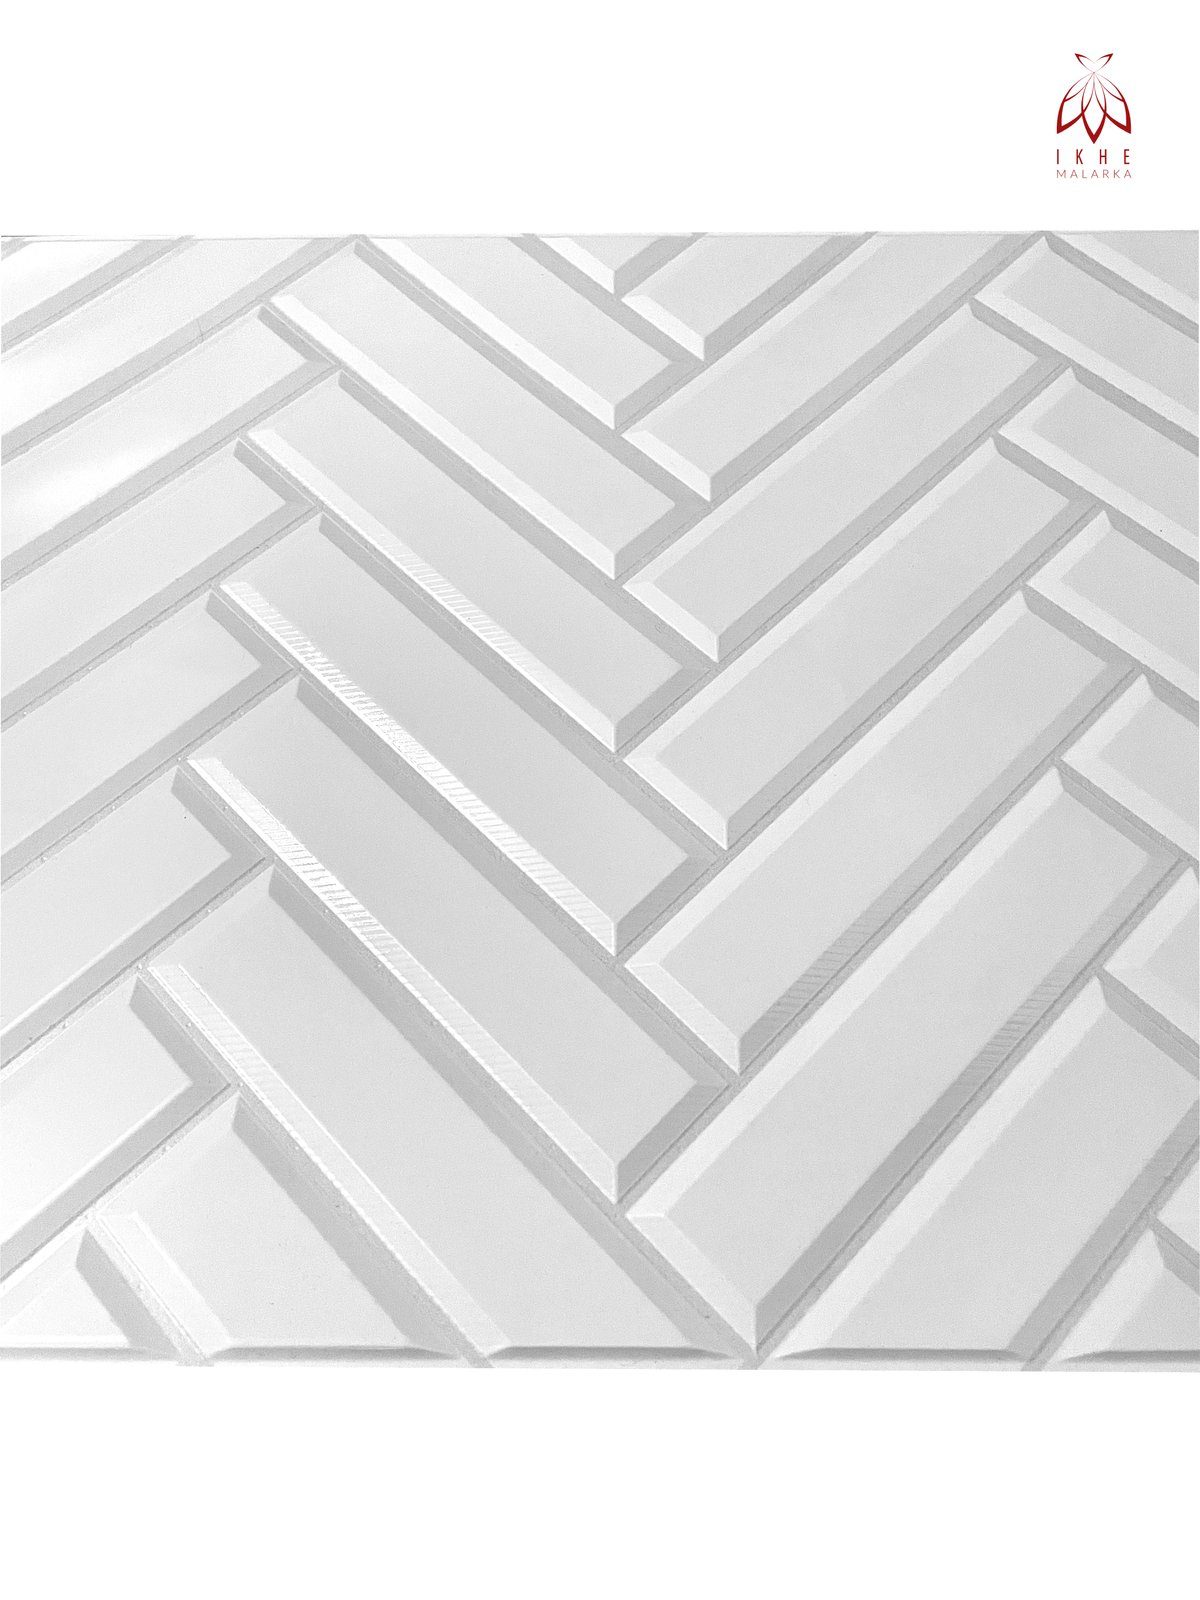 IKHEMalarka 3D Wandpaneel 4,1qm/10 Stück Tile 0,41 Mosaik qm, Verkleidung PVC Deckenpaneele 3D Wandpaneele, Wandverkleidung Imitation Fliesen Gloss cm, BxL: 48,00x87,00